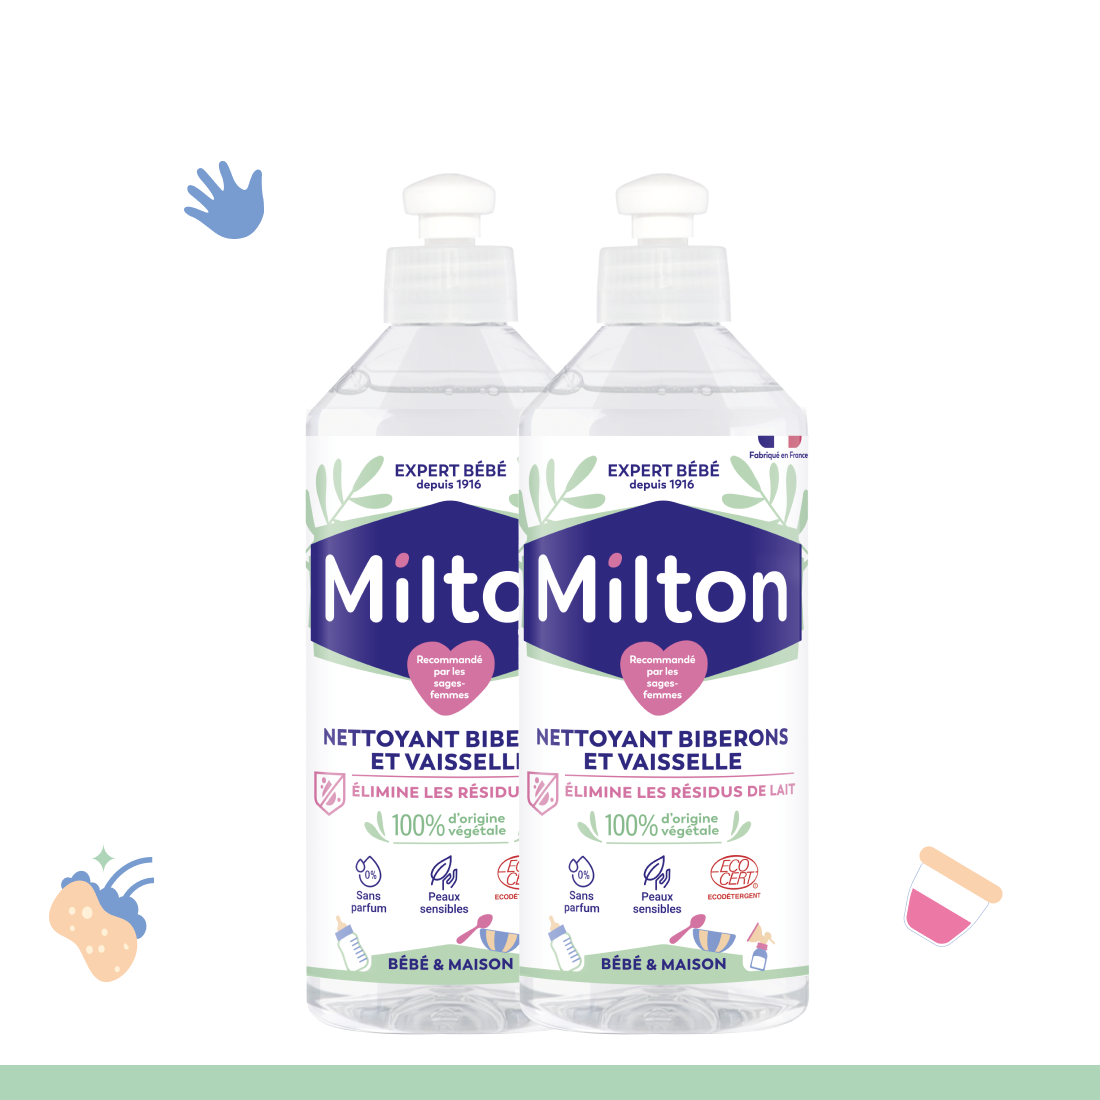 Gel mains désinfectant Milton - 100 ml - Entretien de la maison